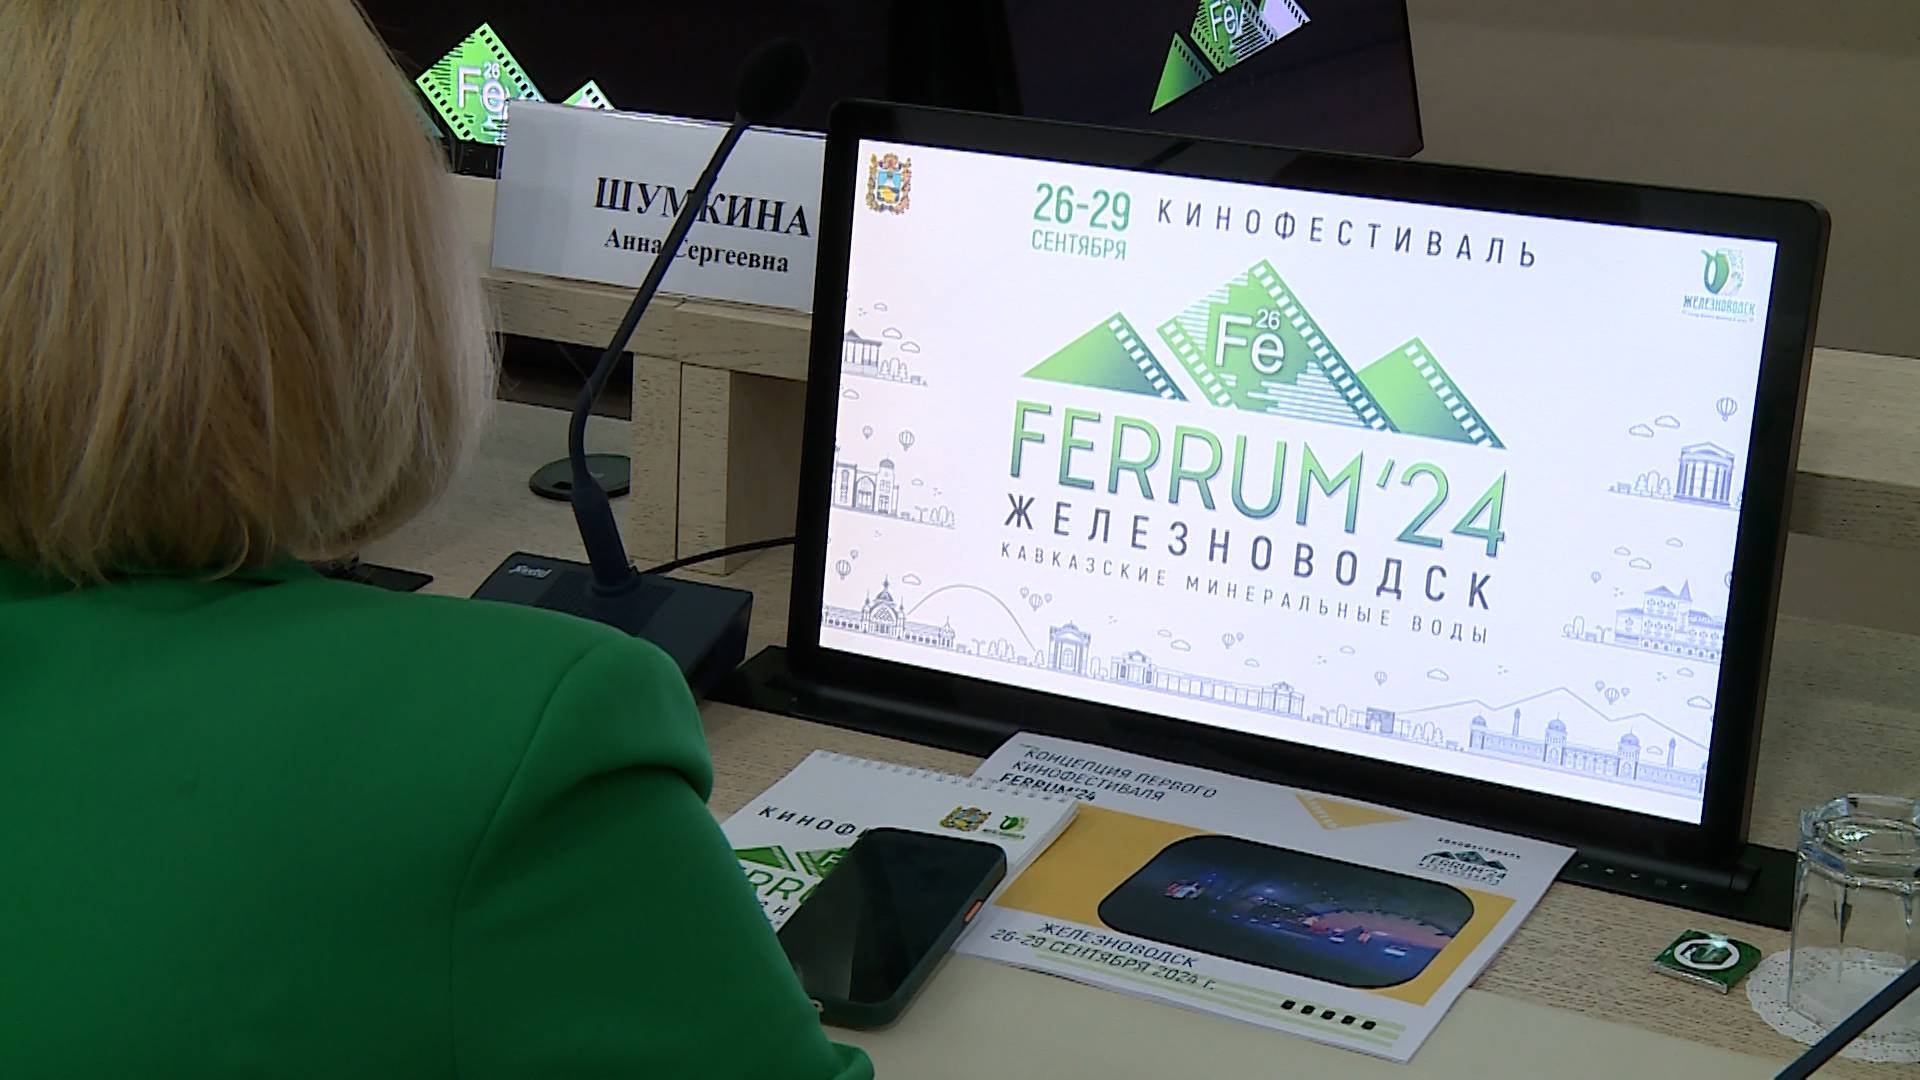 Кинофестиваль Ferrum-24 анонсировали губернатор Ставрополья и министр культуры РФ